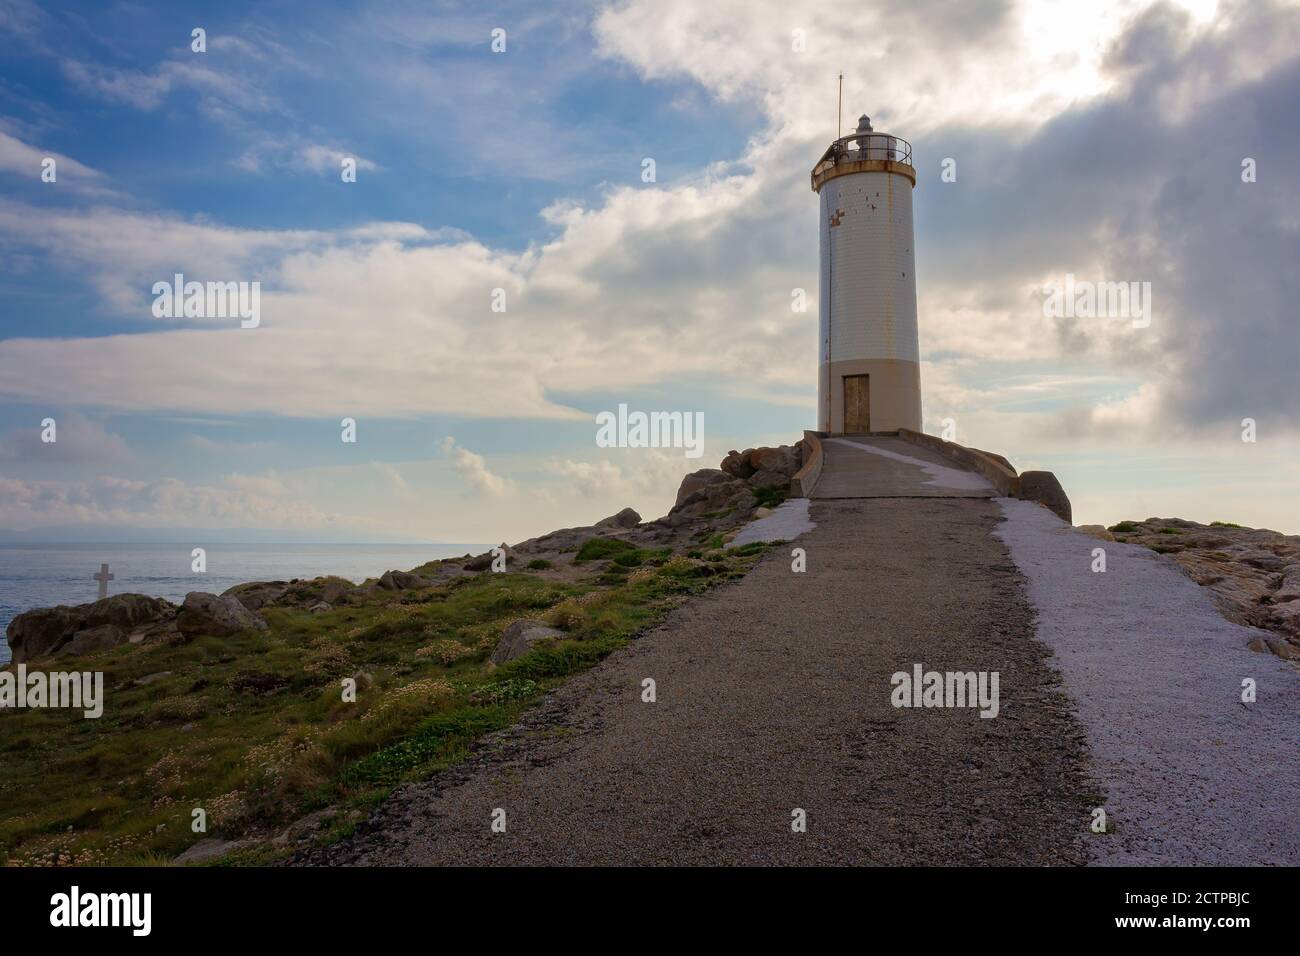 Vista del Faro de Roncudo, donde se recogen los mejores percebes de la costa gallega, España Foto de stock